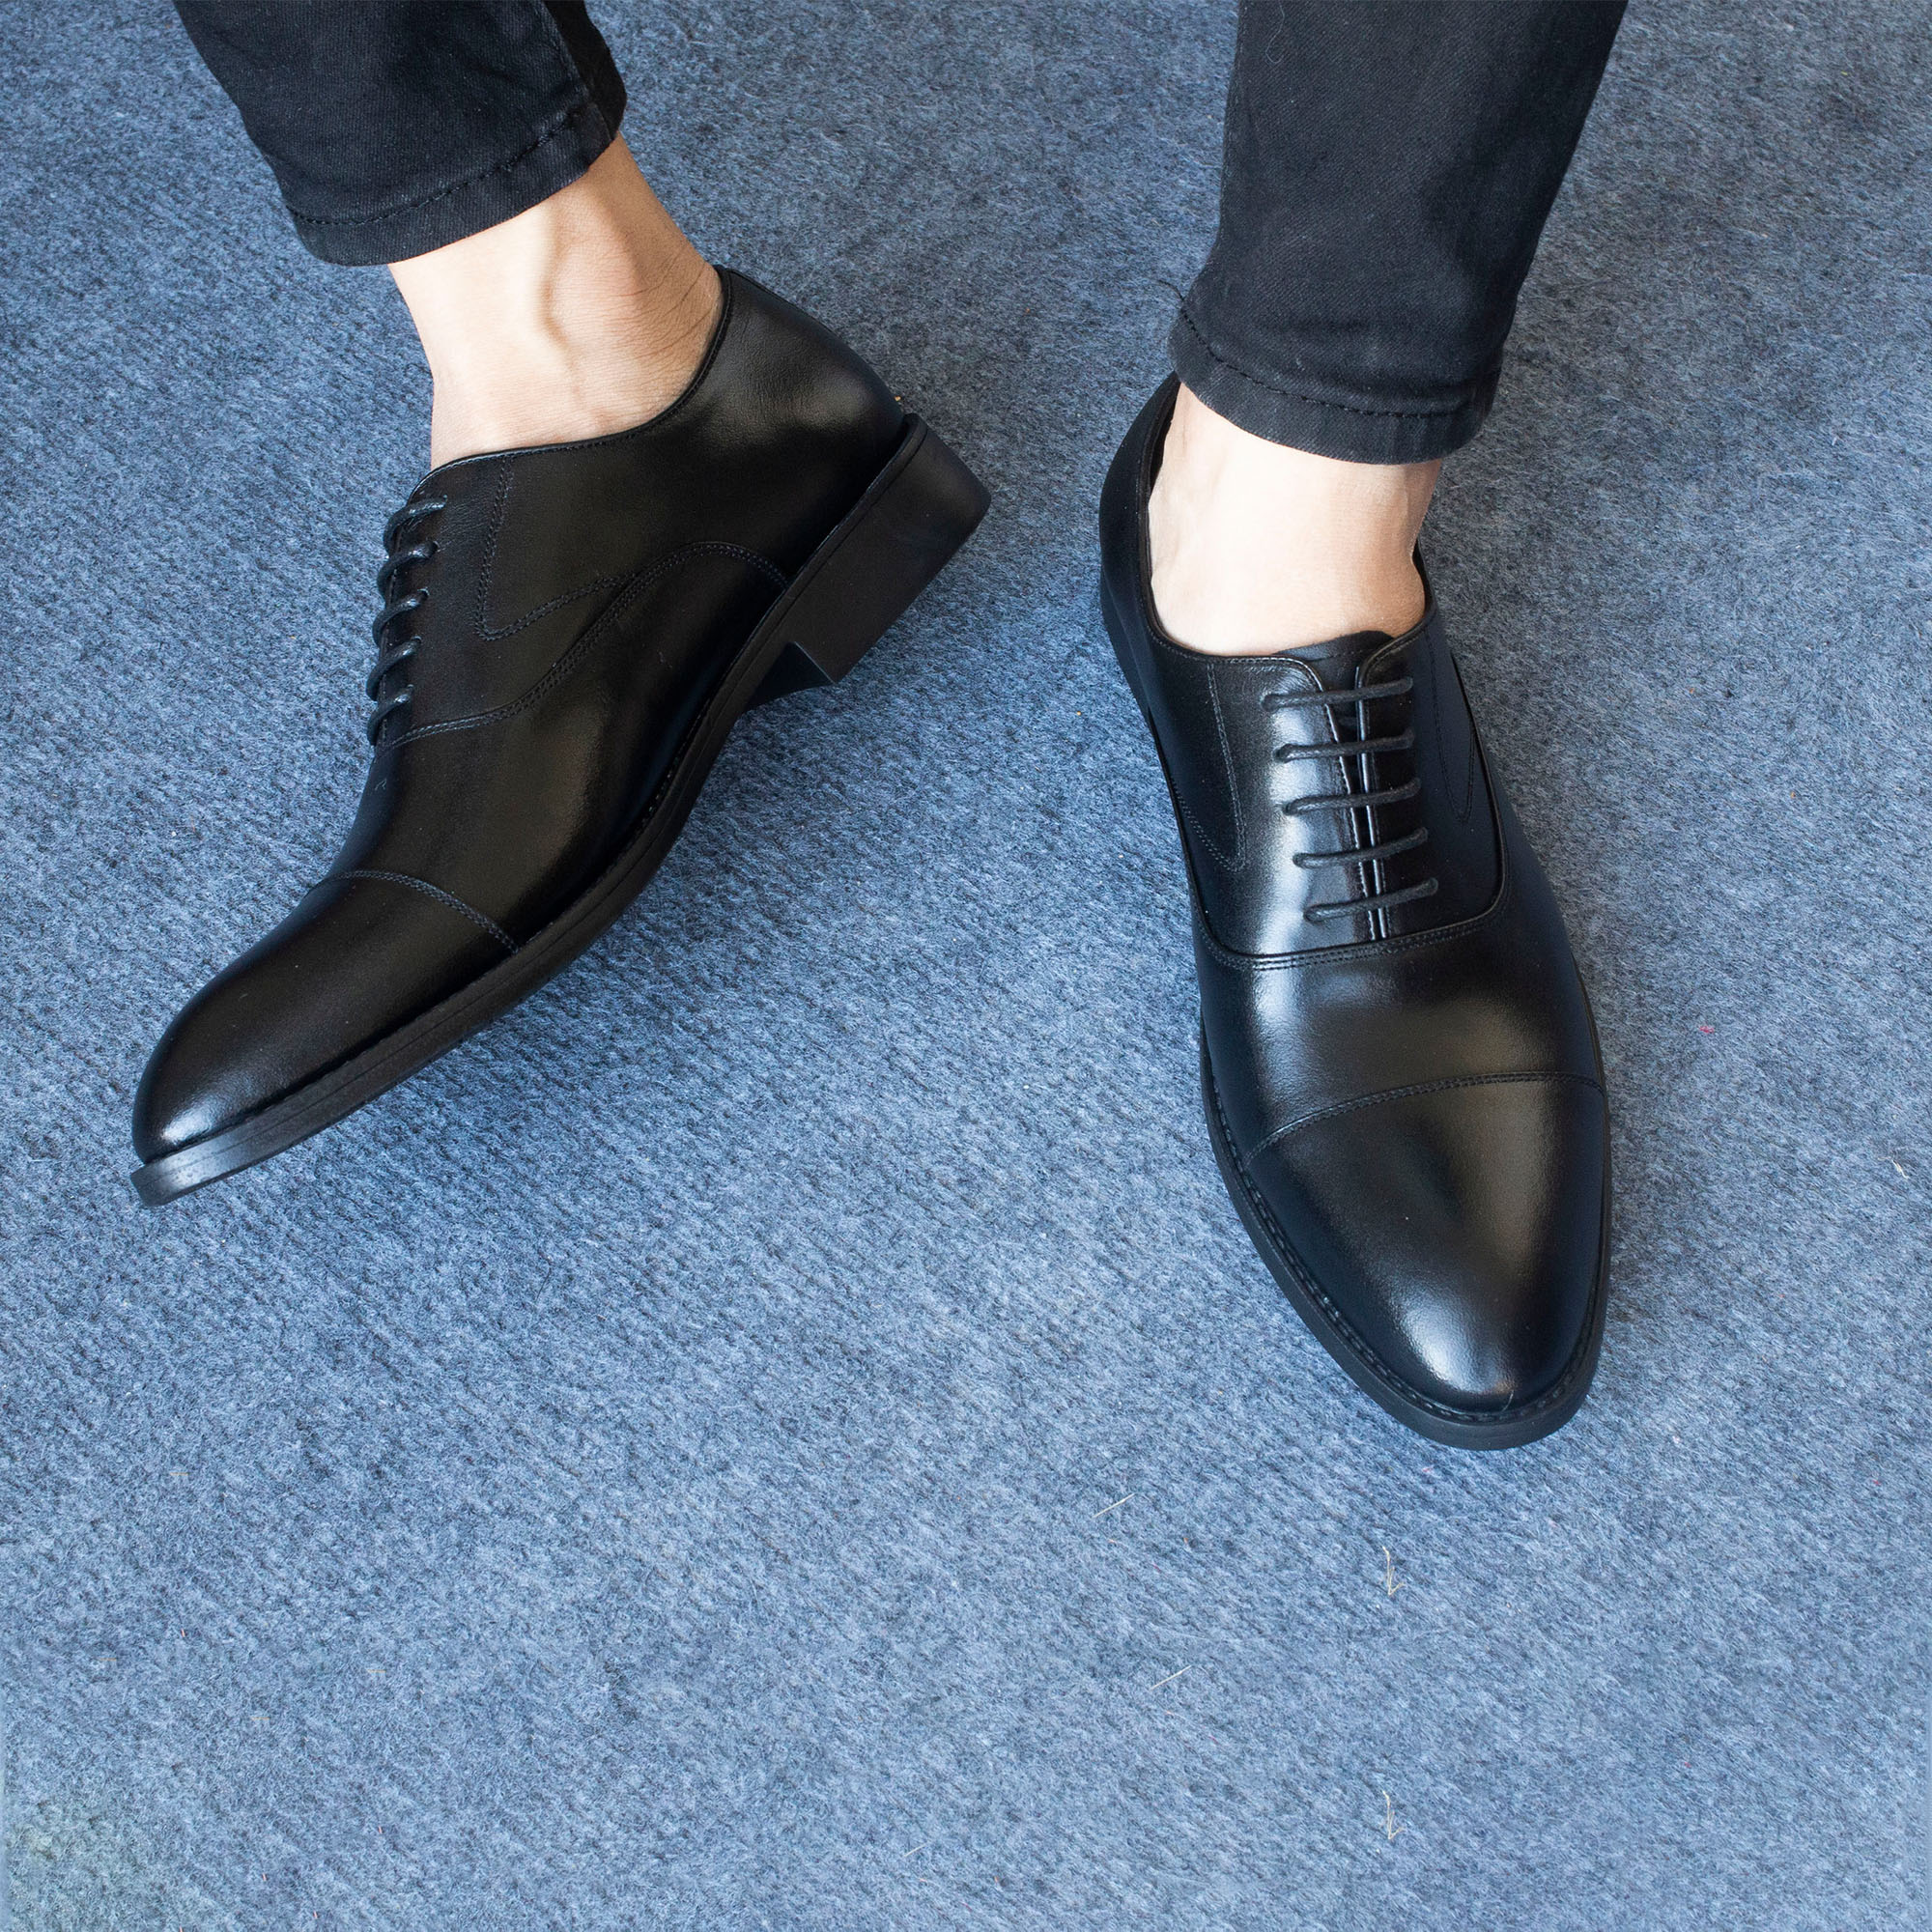 Giày da nam, giày oxford công sở Bụi Leather G106 - Da bò Nappa cao cấp - Bảo hành 12 tháng